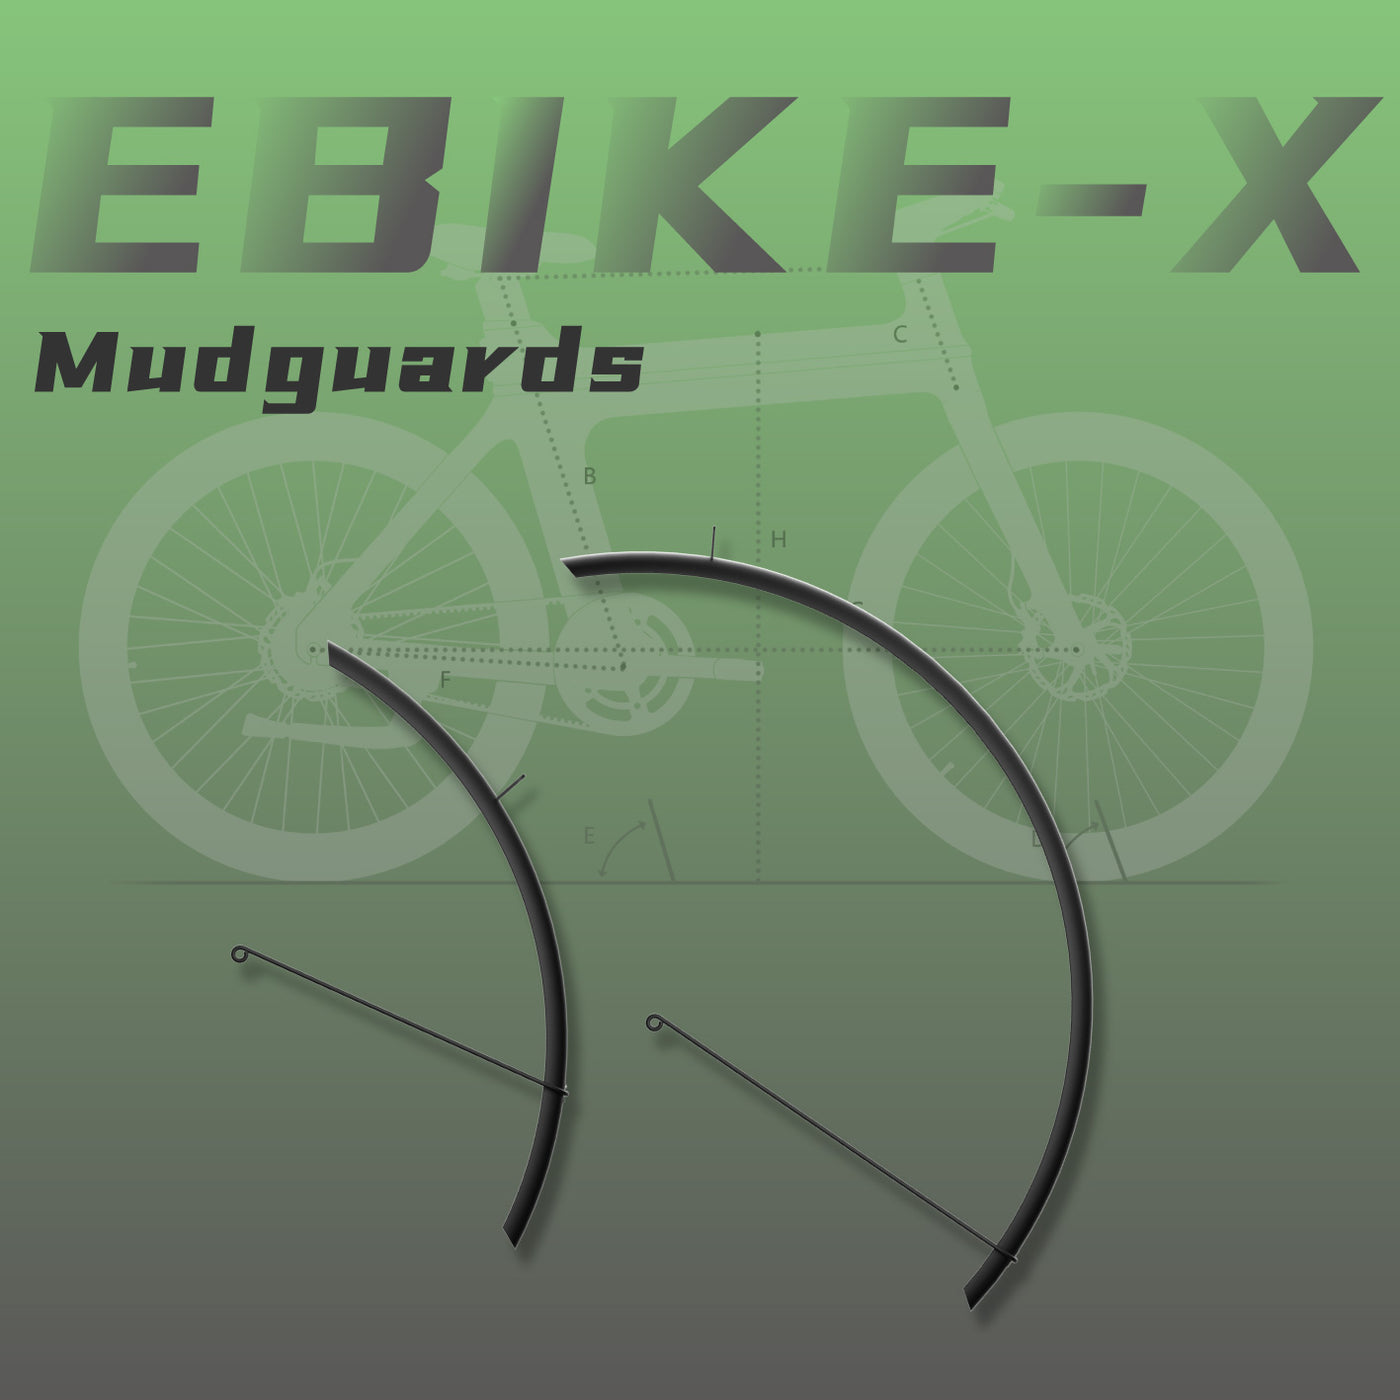 Ebike-X Mudguards